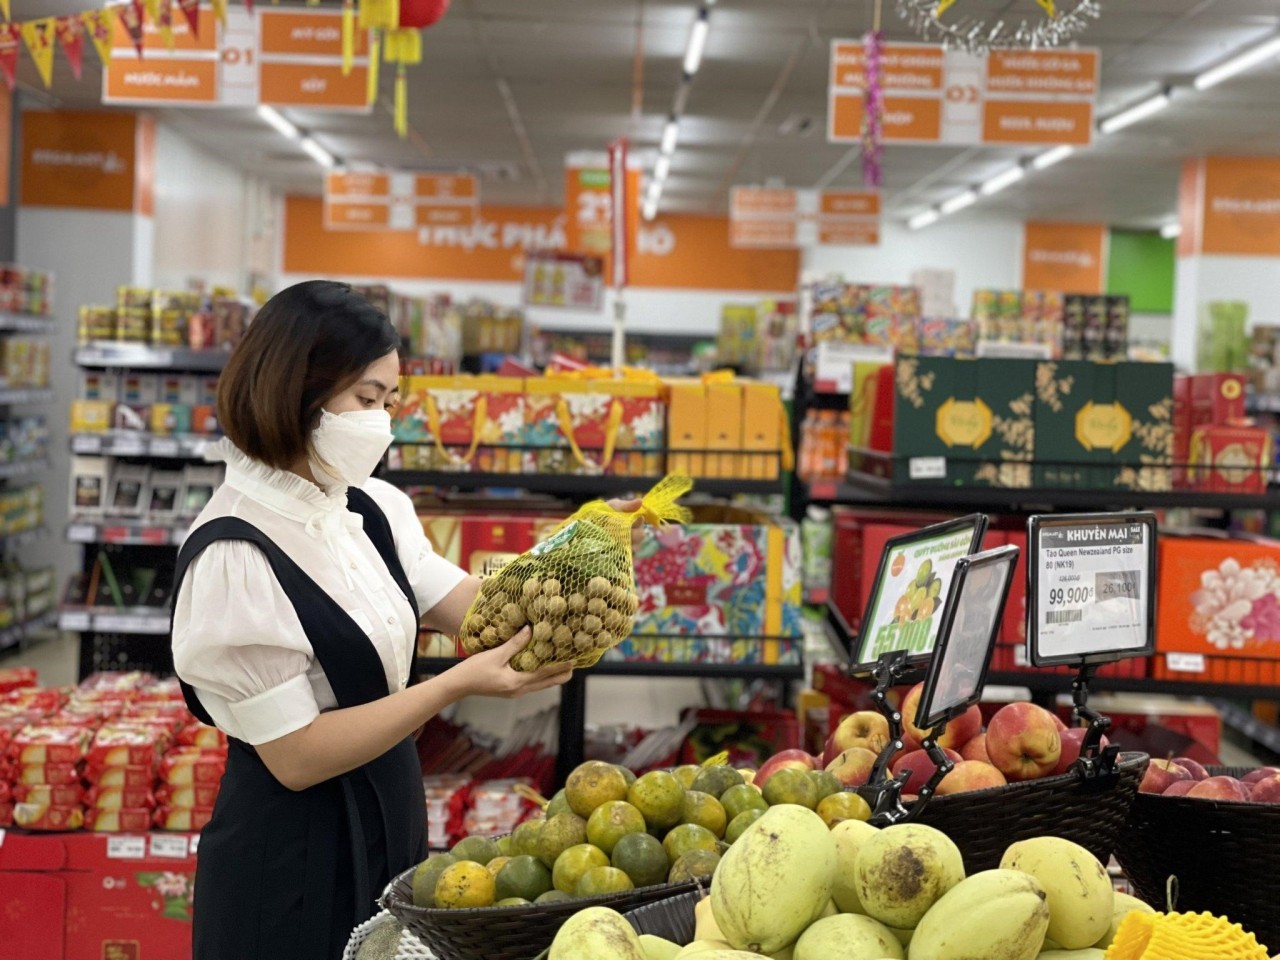 Nhãn Lồng Hưng Yên chính thức đến với tay người tiêu dùng tại Hệ thống siêu thị BRGMart.